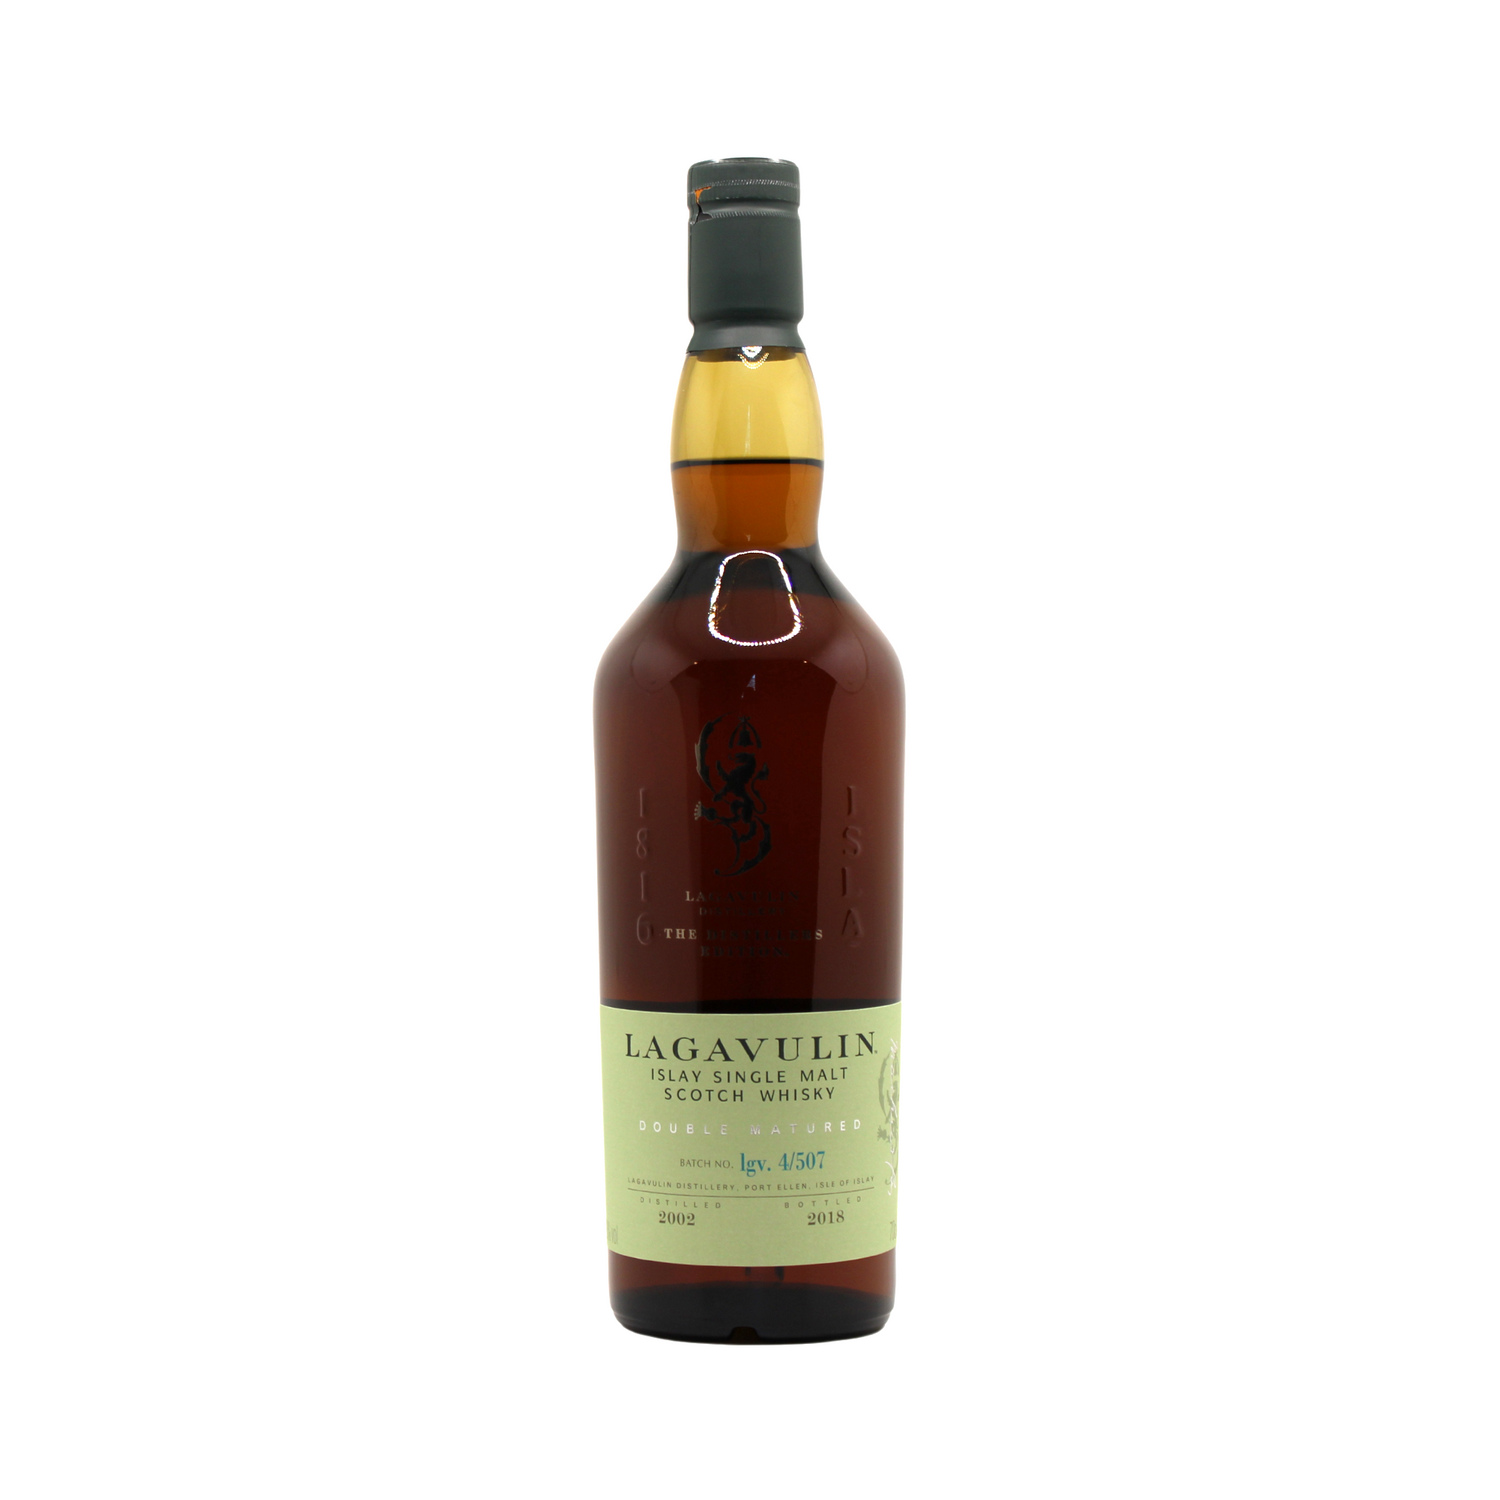 Lagavulin 2002 Distiller's Edition Single Malt Islay Scotch Whisky